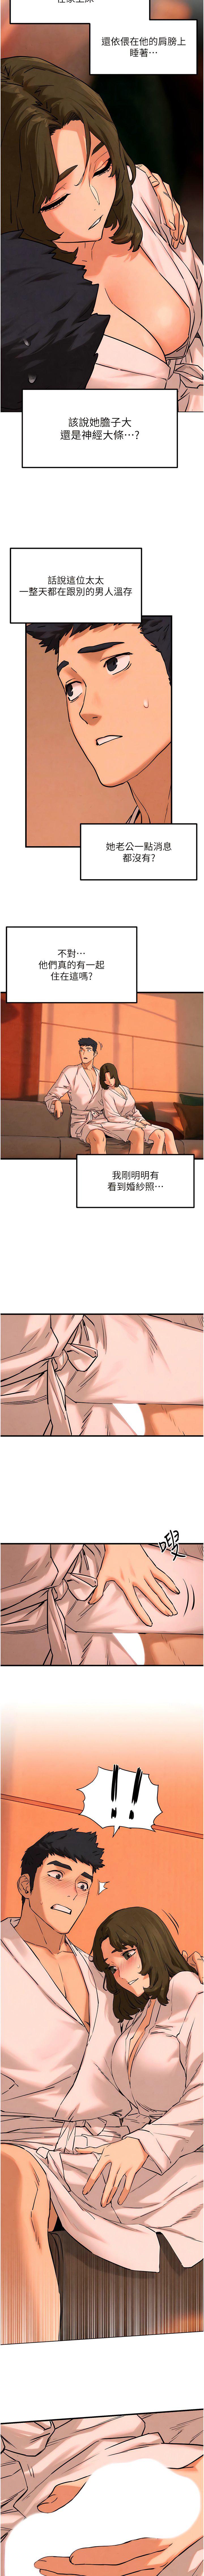 韩国污漫画 欲海交鋒 第5话 奶汁大喷发的乳交 12